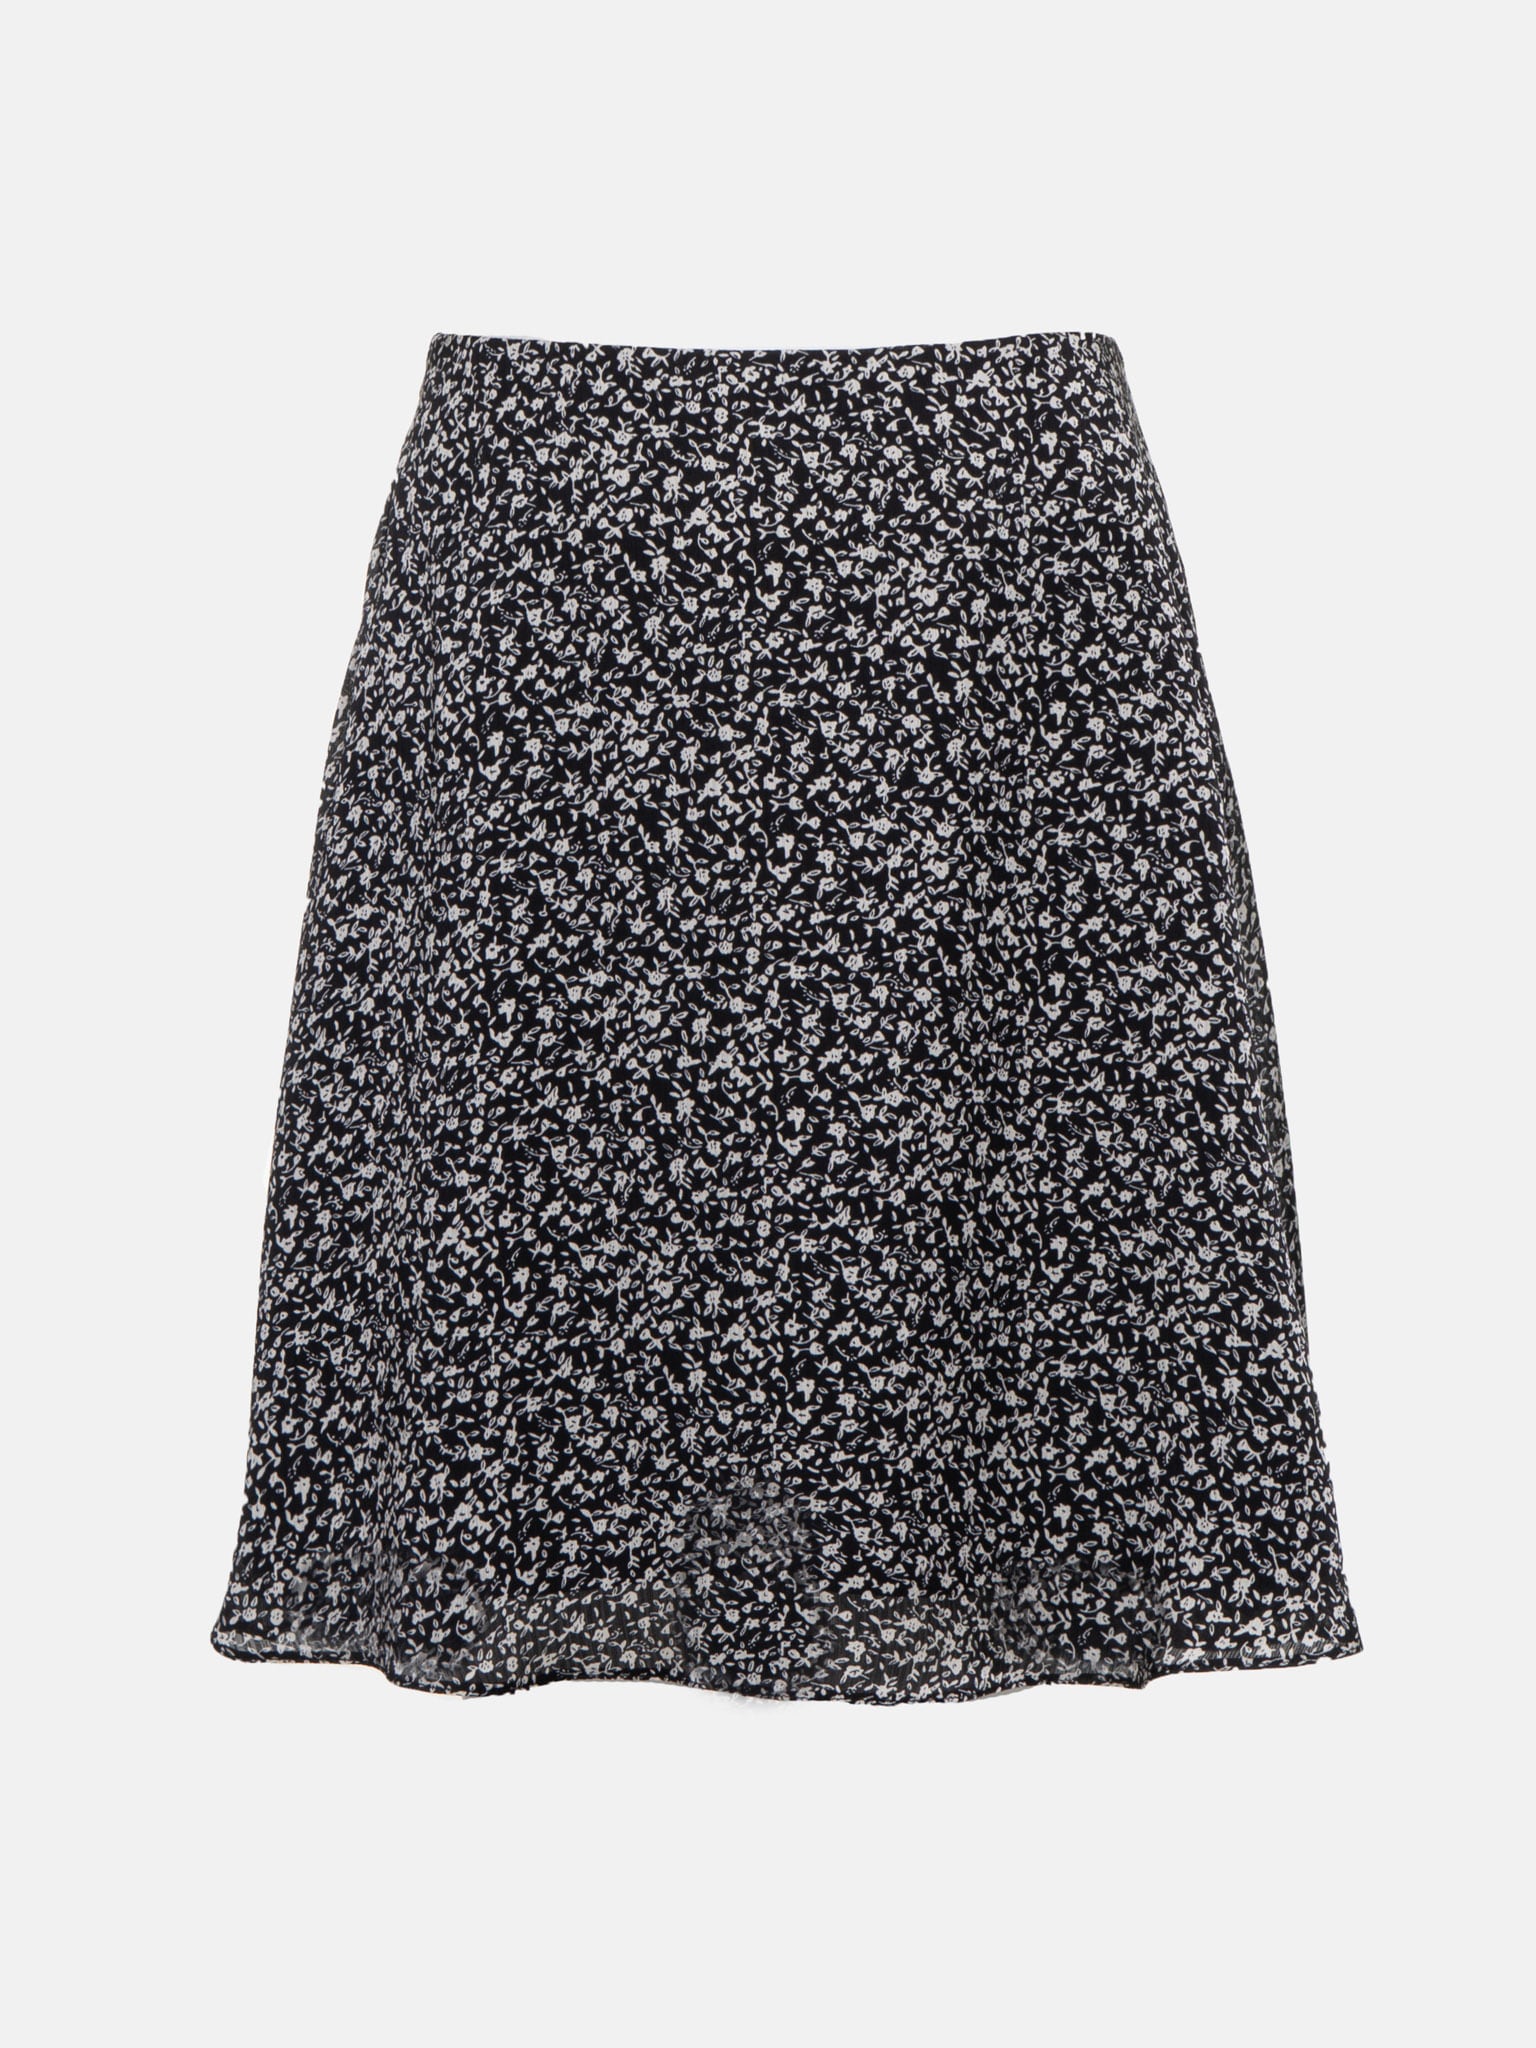 LICHI - Online fashion store :: Satin mini skirt